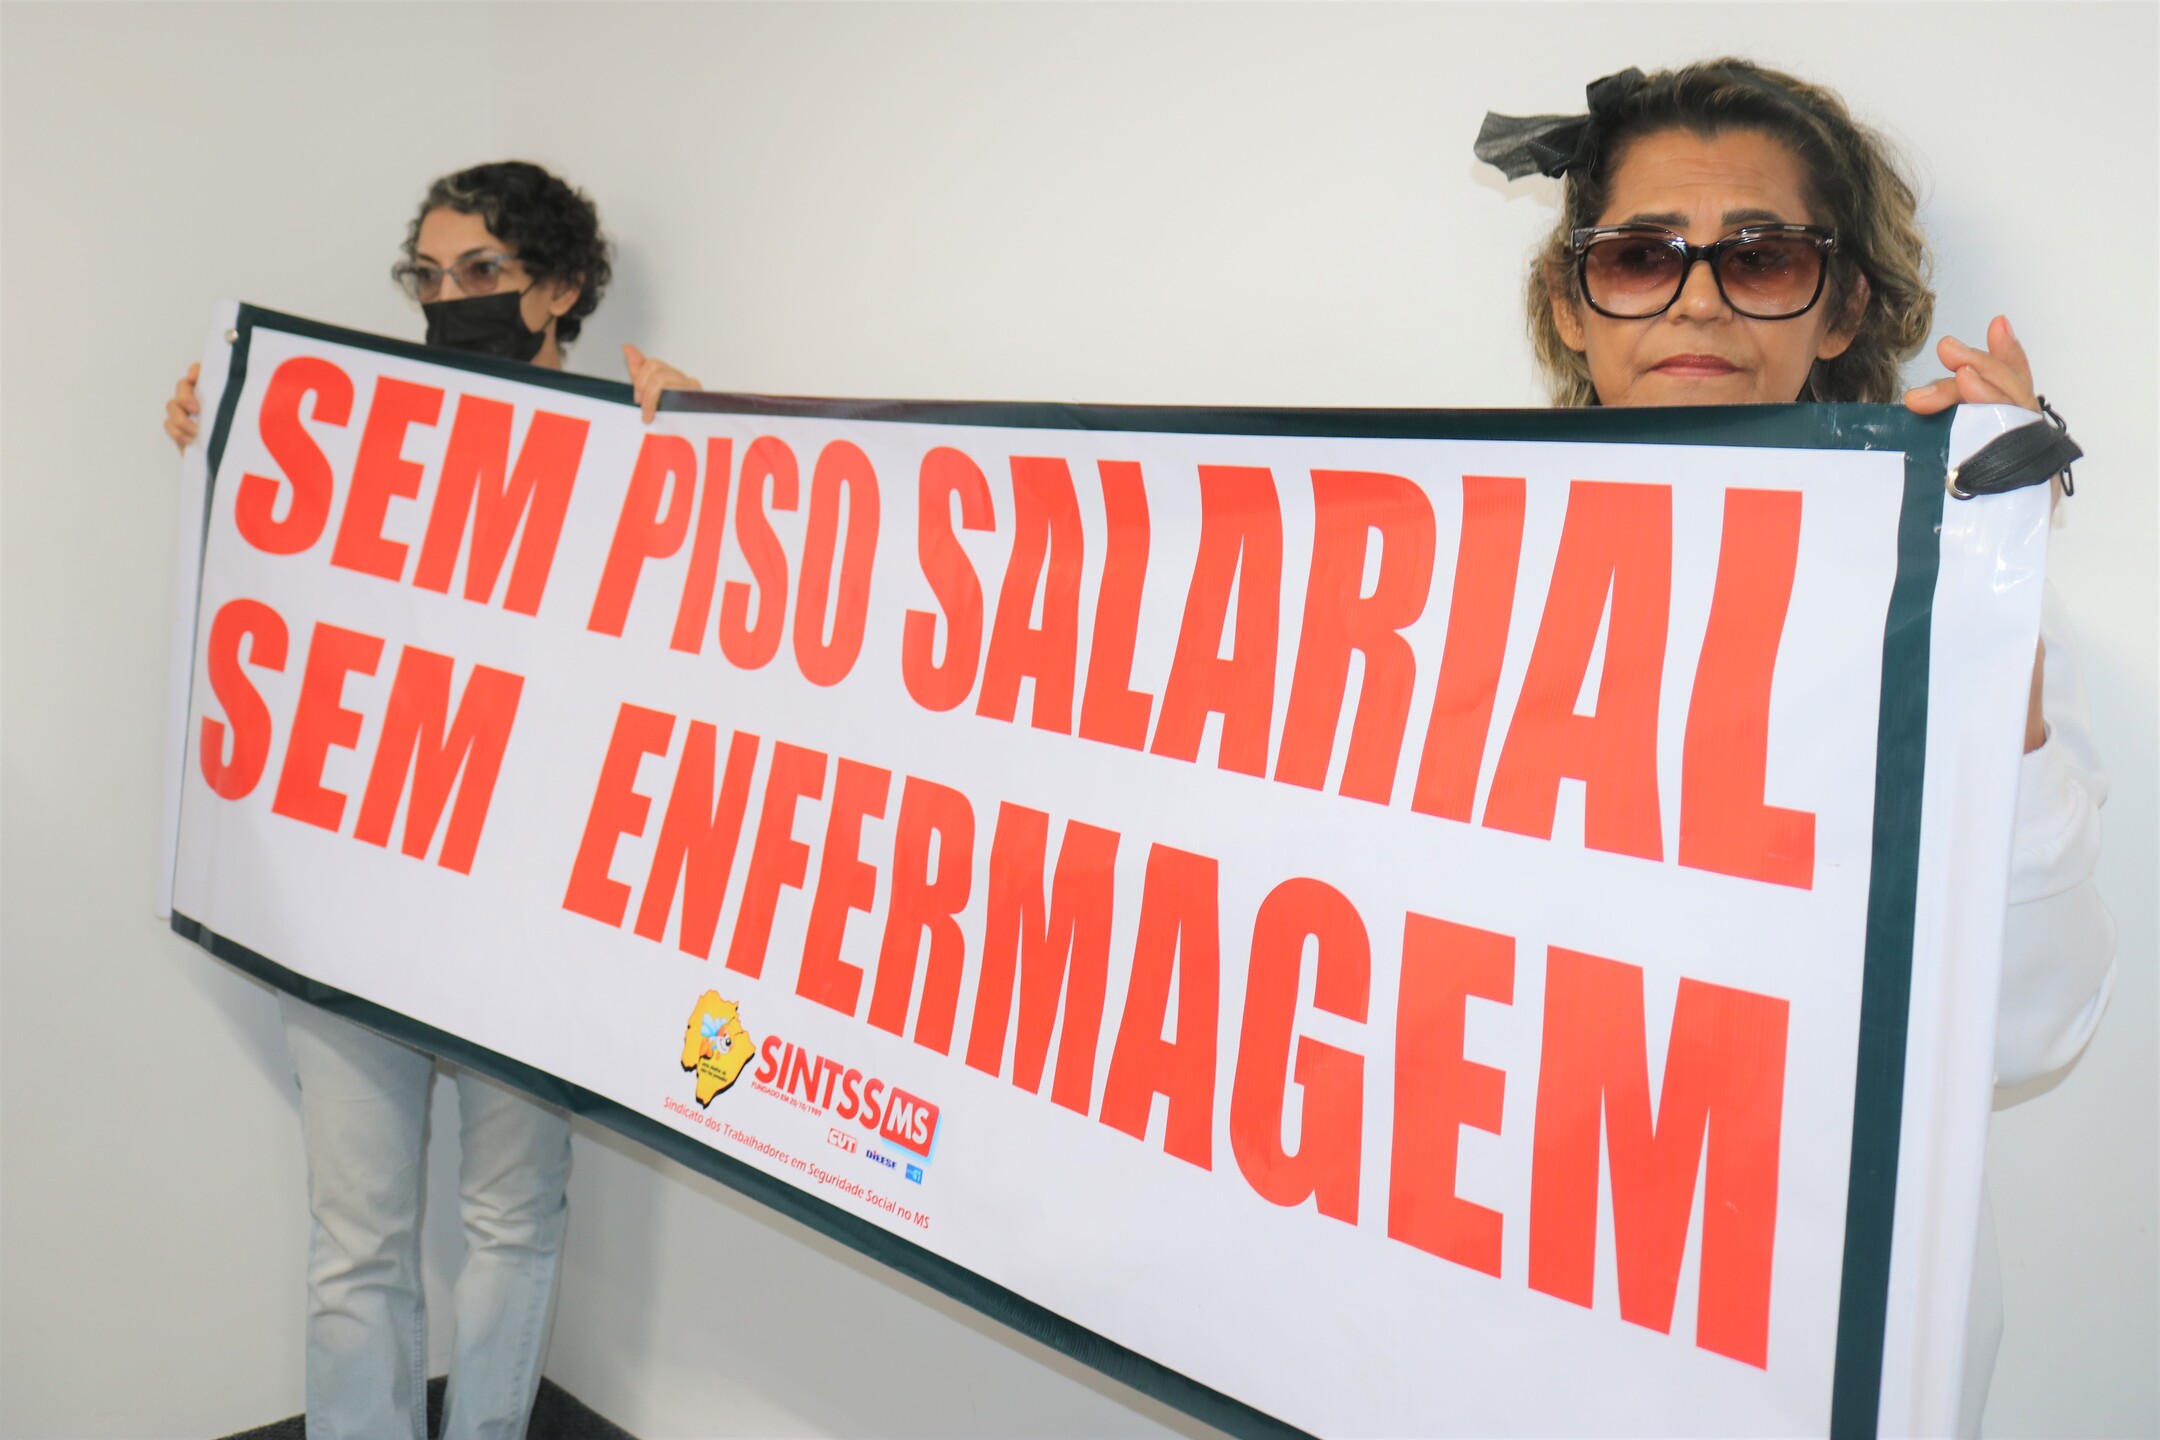 Jogos de azar em breve legalizados no Brasil esta é a situação atual - O  Progresso